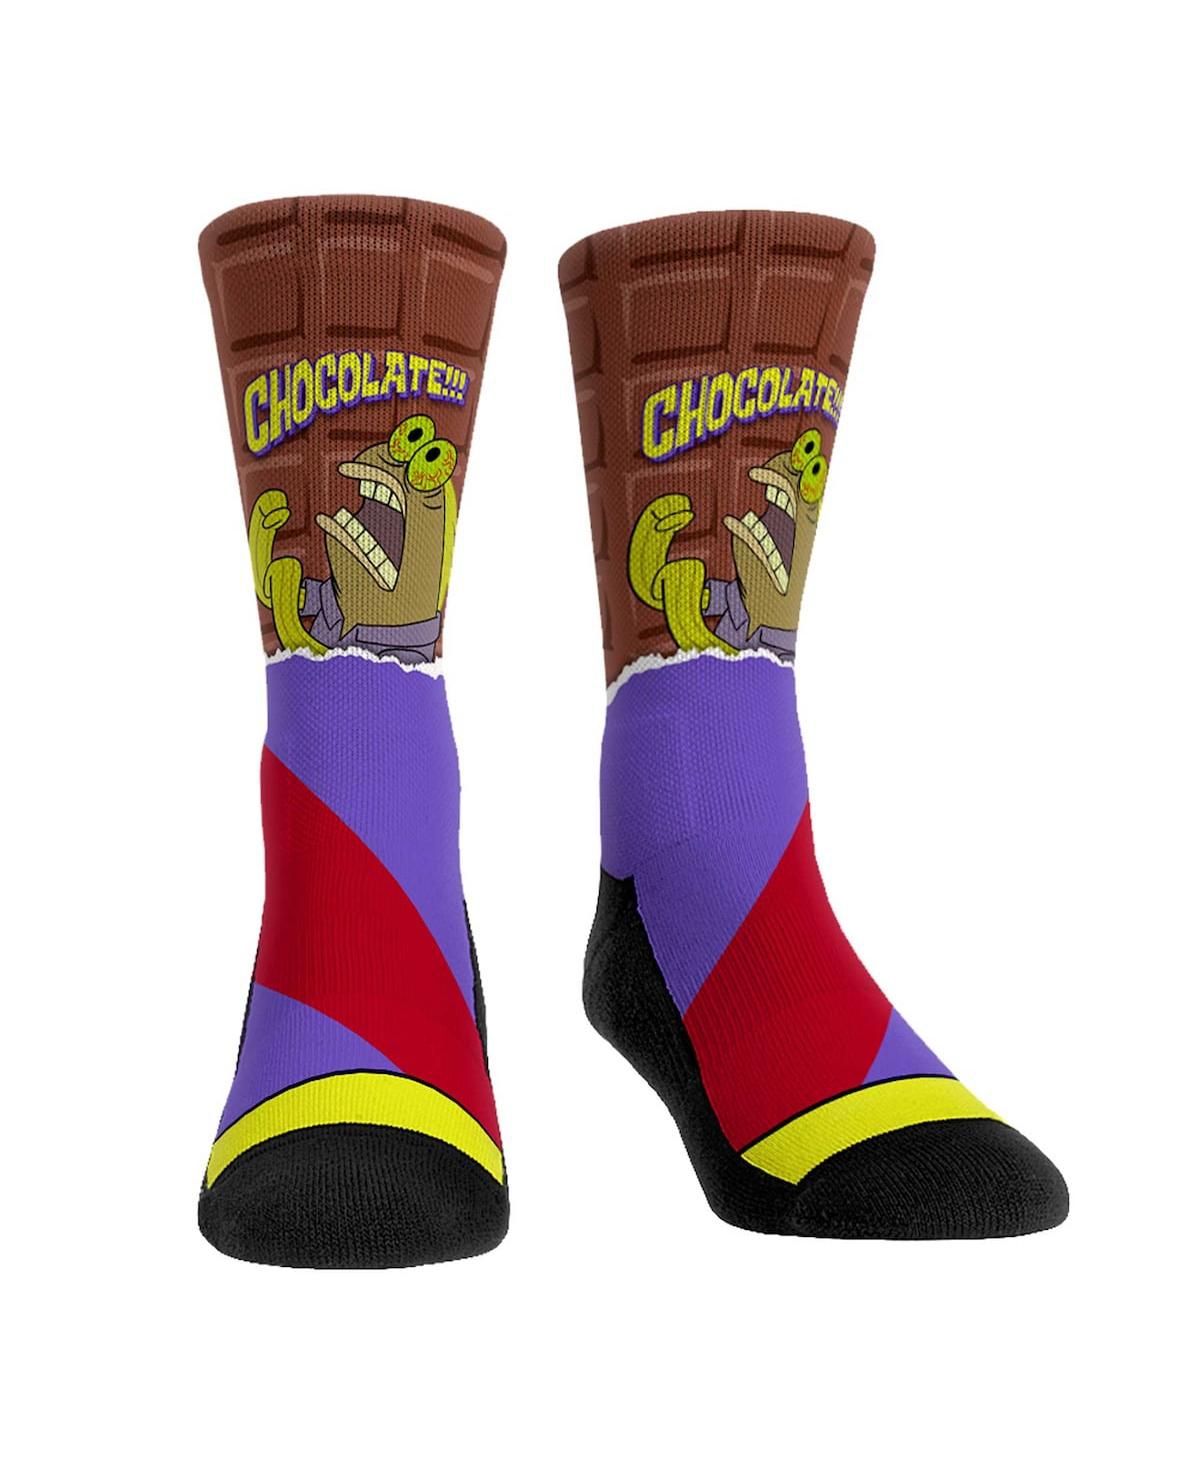 Men's and Women's Rock 'Em Socks SpongeBob SquarePants Chocolate Crew Socks - Multi